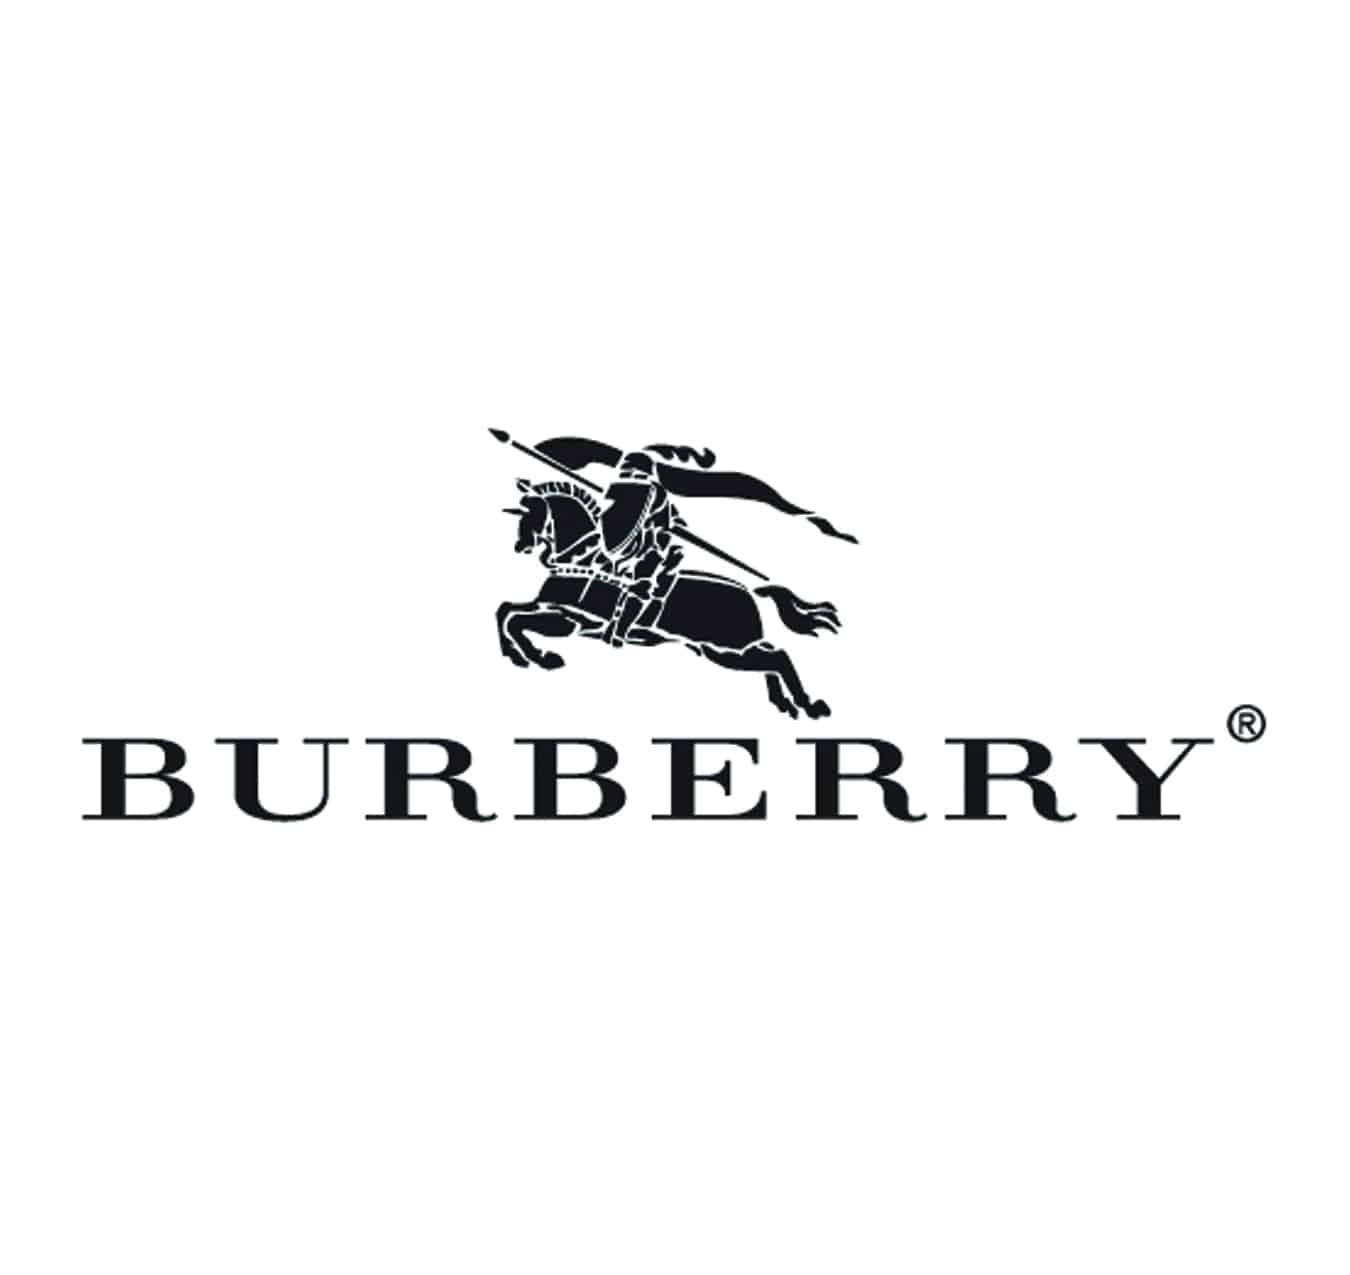 Burberry logos copy